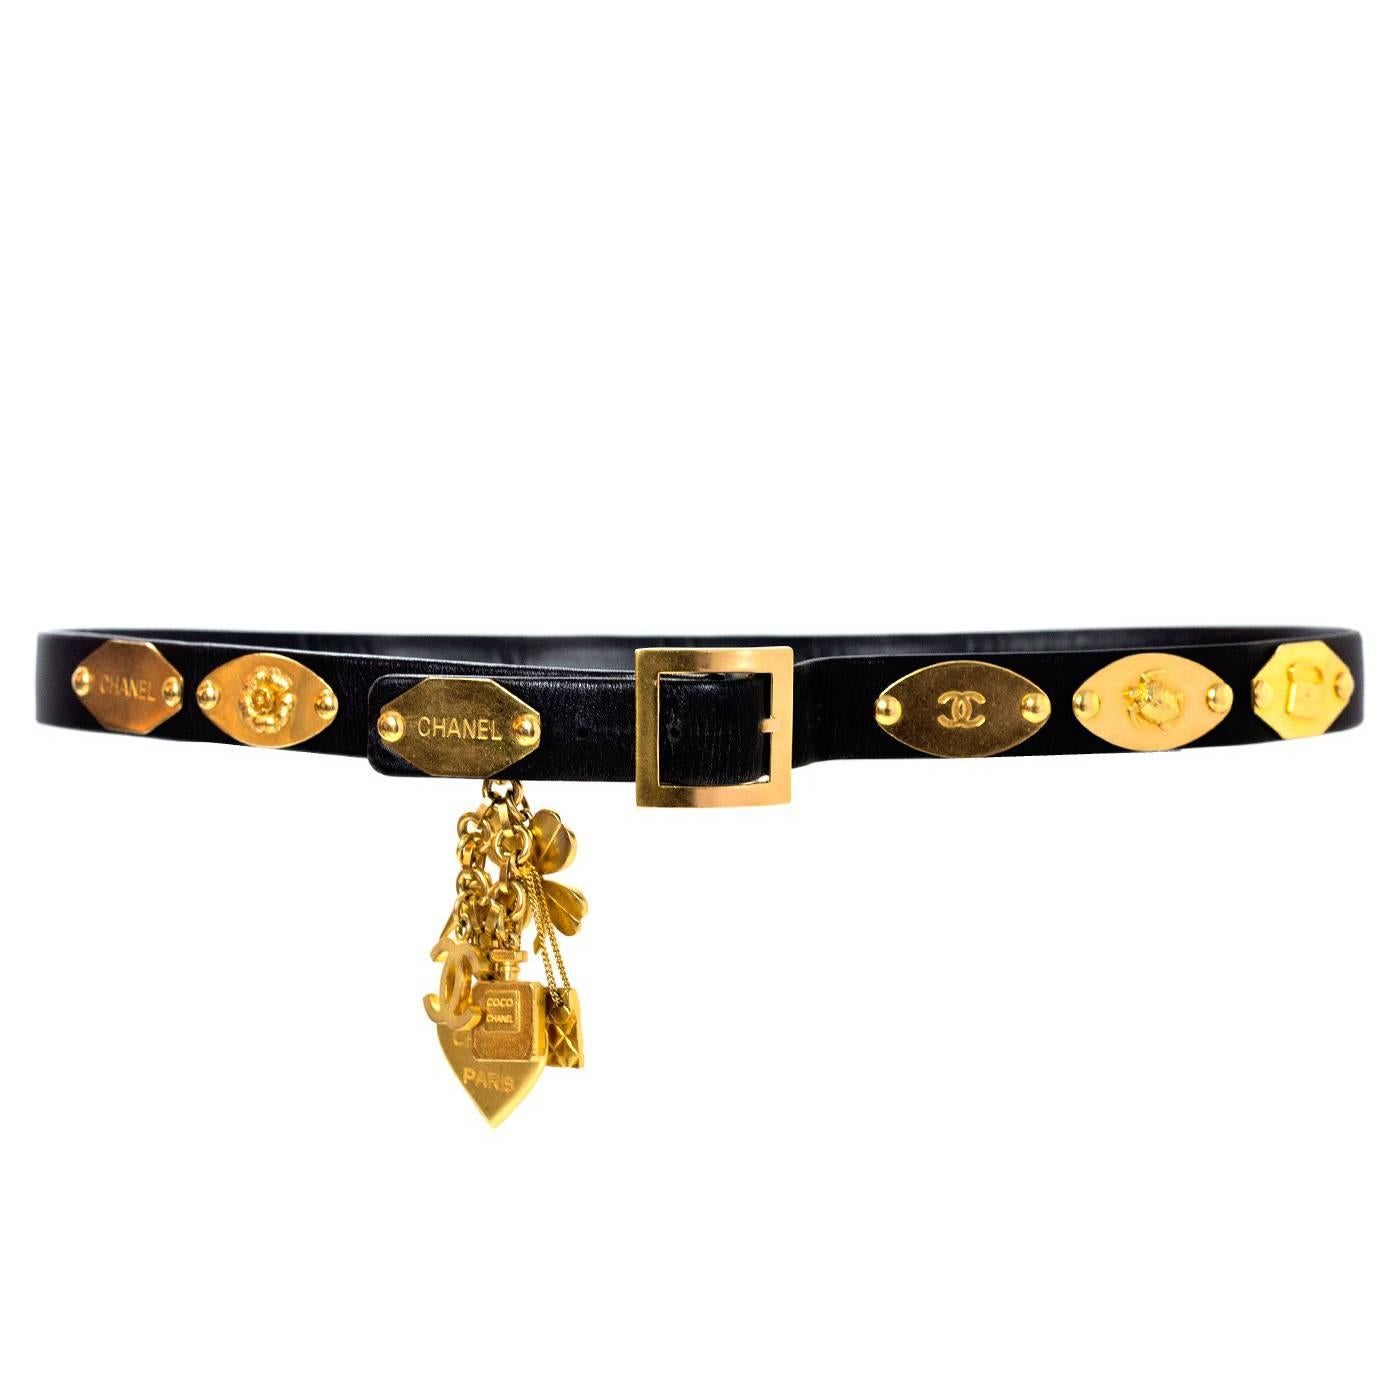 Chanel Vintage '96 Black Leather Charm Belt
Features CC, Camelia, 